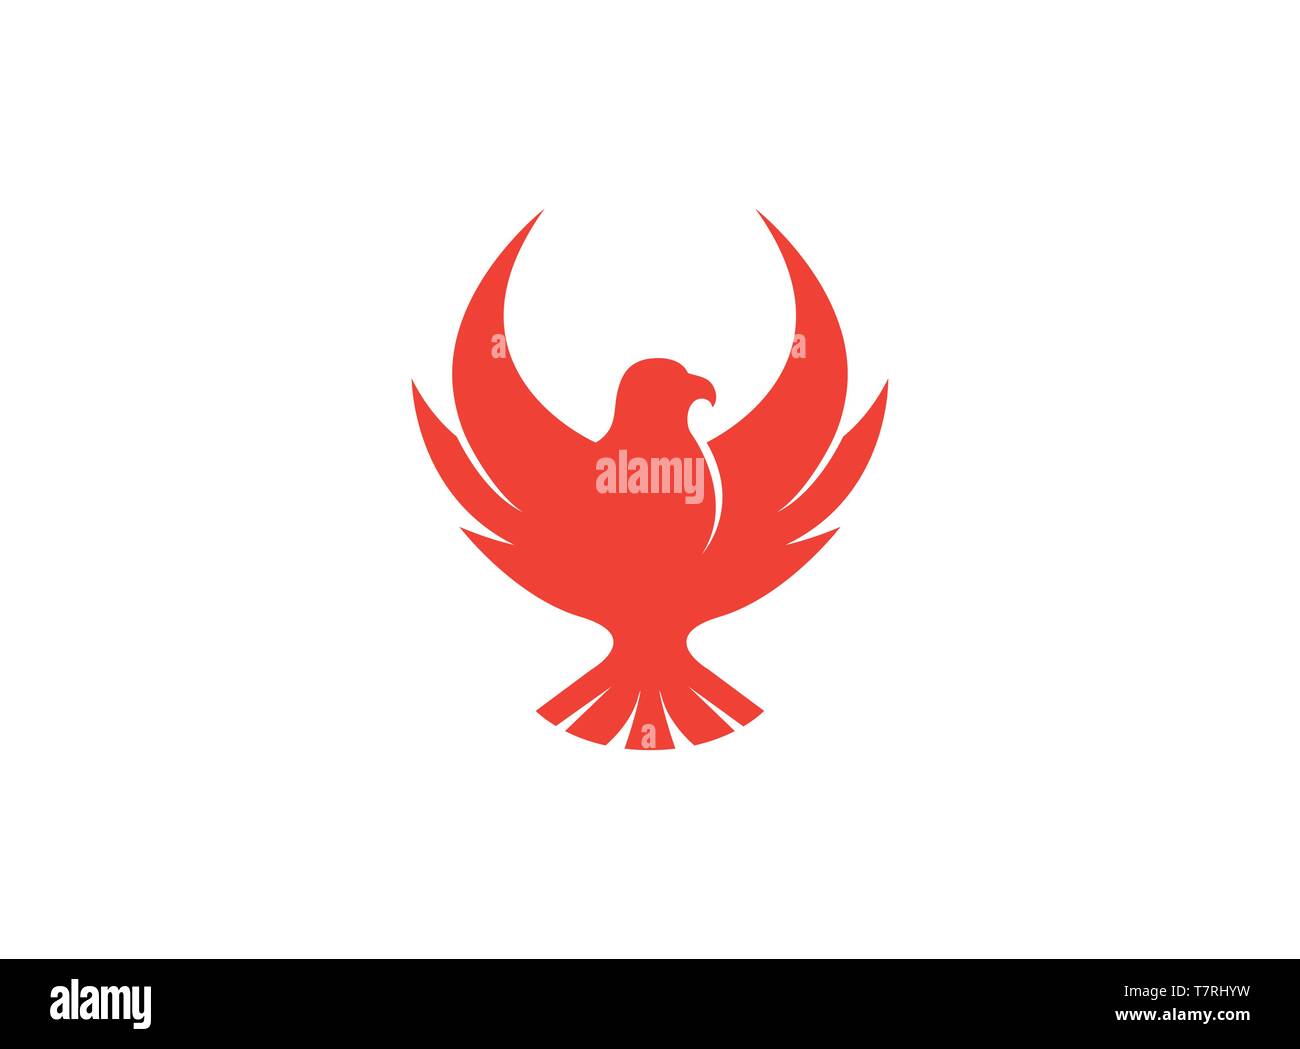 Thiết kế logo Red Eagle với sự kết hợp tinh tế giữa màu đỏ và hình ảnh đại bàng sẽ khiến bạn cảm thấy thật đam mê và tự hào khi triển khai những chiến lược kinh doanh của mình.